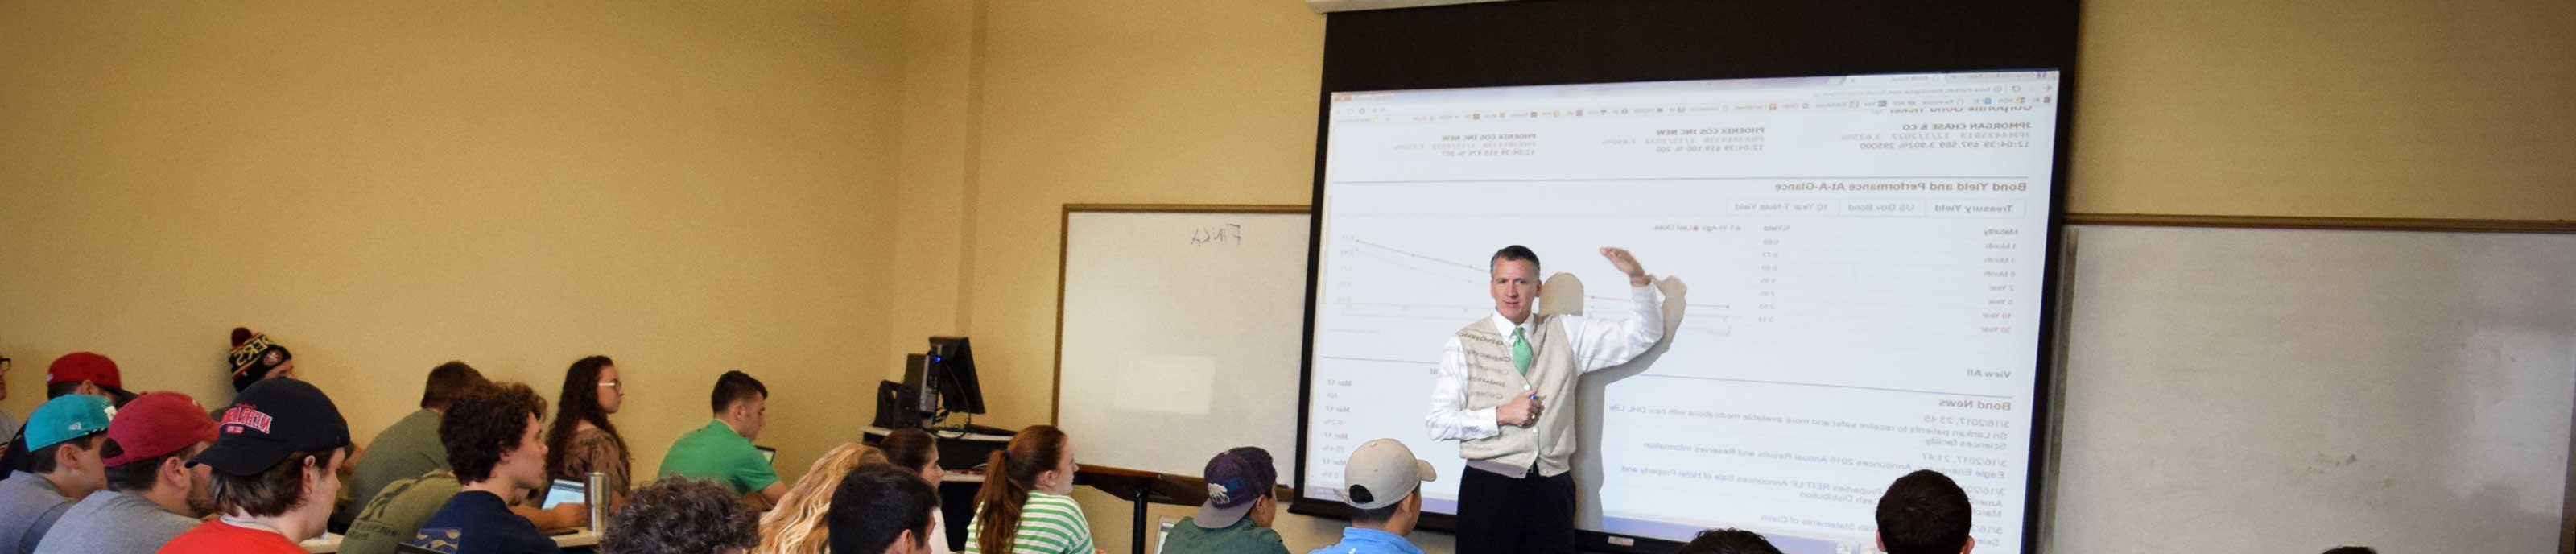 Dr. Michael King teaches class